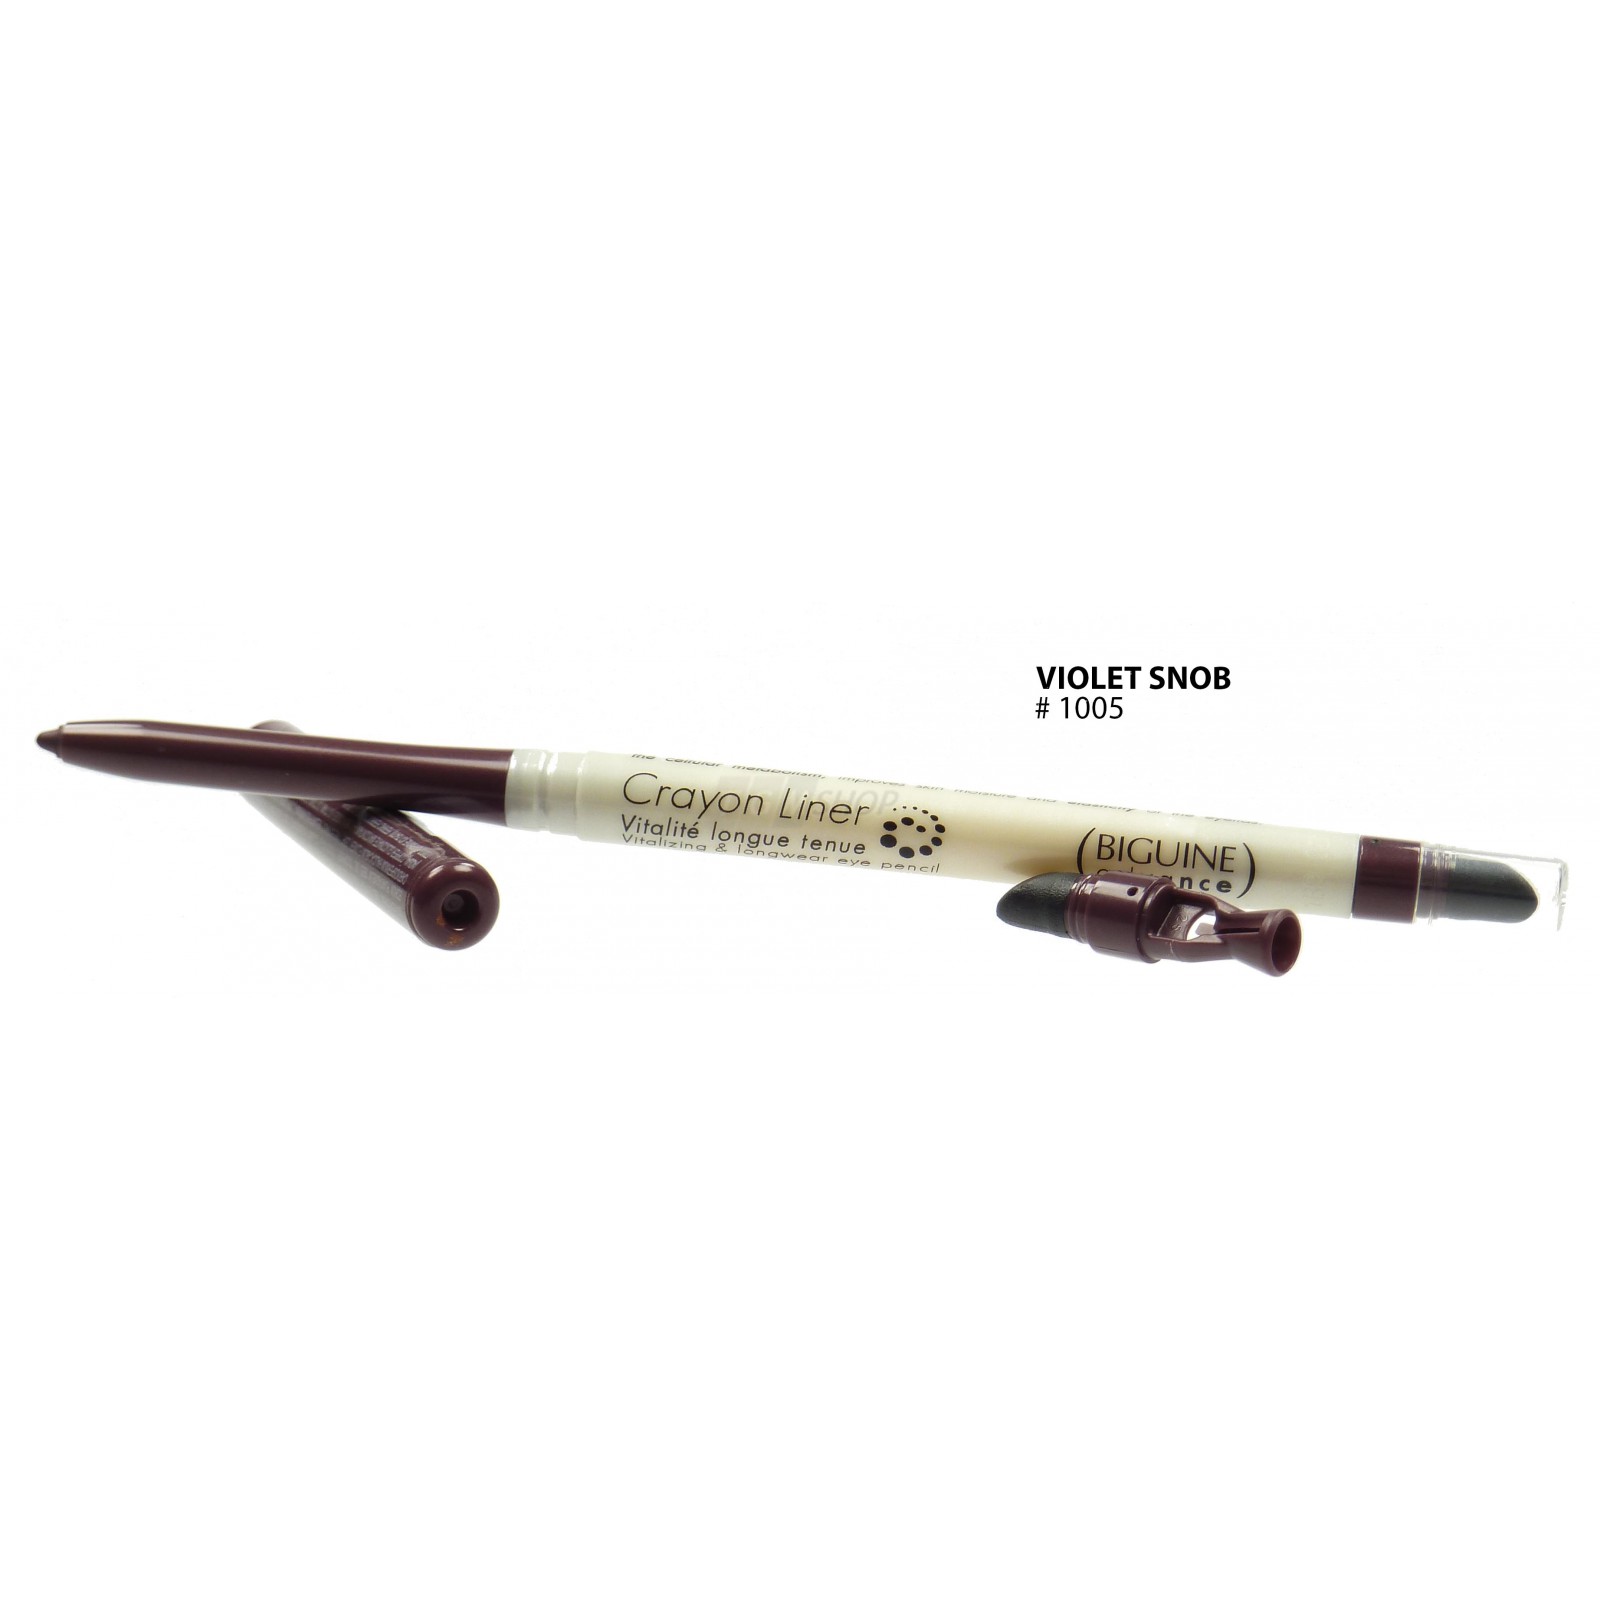 BIGUINE ADVANCE - CRAYON LINER VITALITE LONGUE TENUE Augen Stift Make up - 0-35g - 1005 Violet Snob unter Make-up >> Augen - Eyeliner